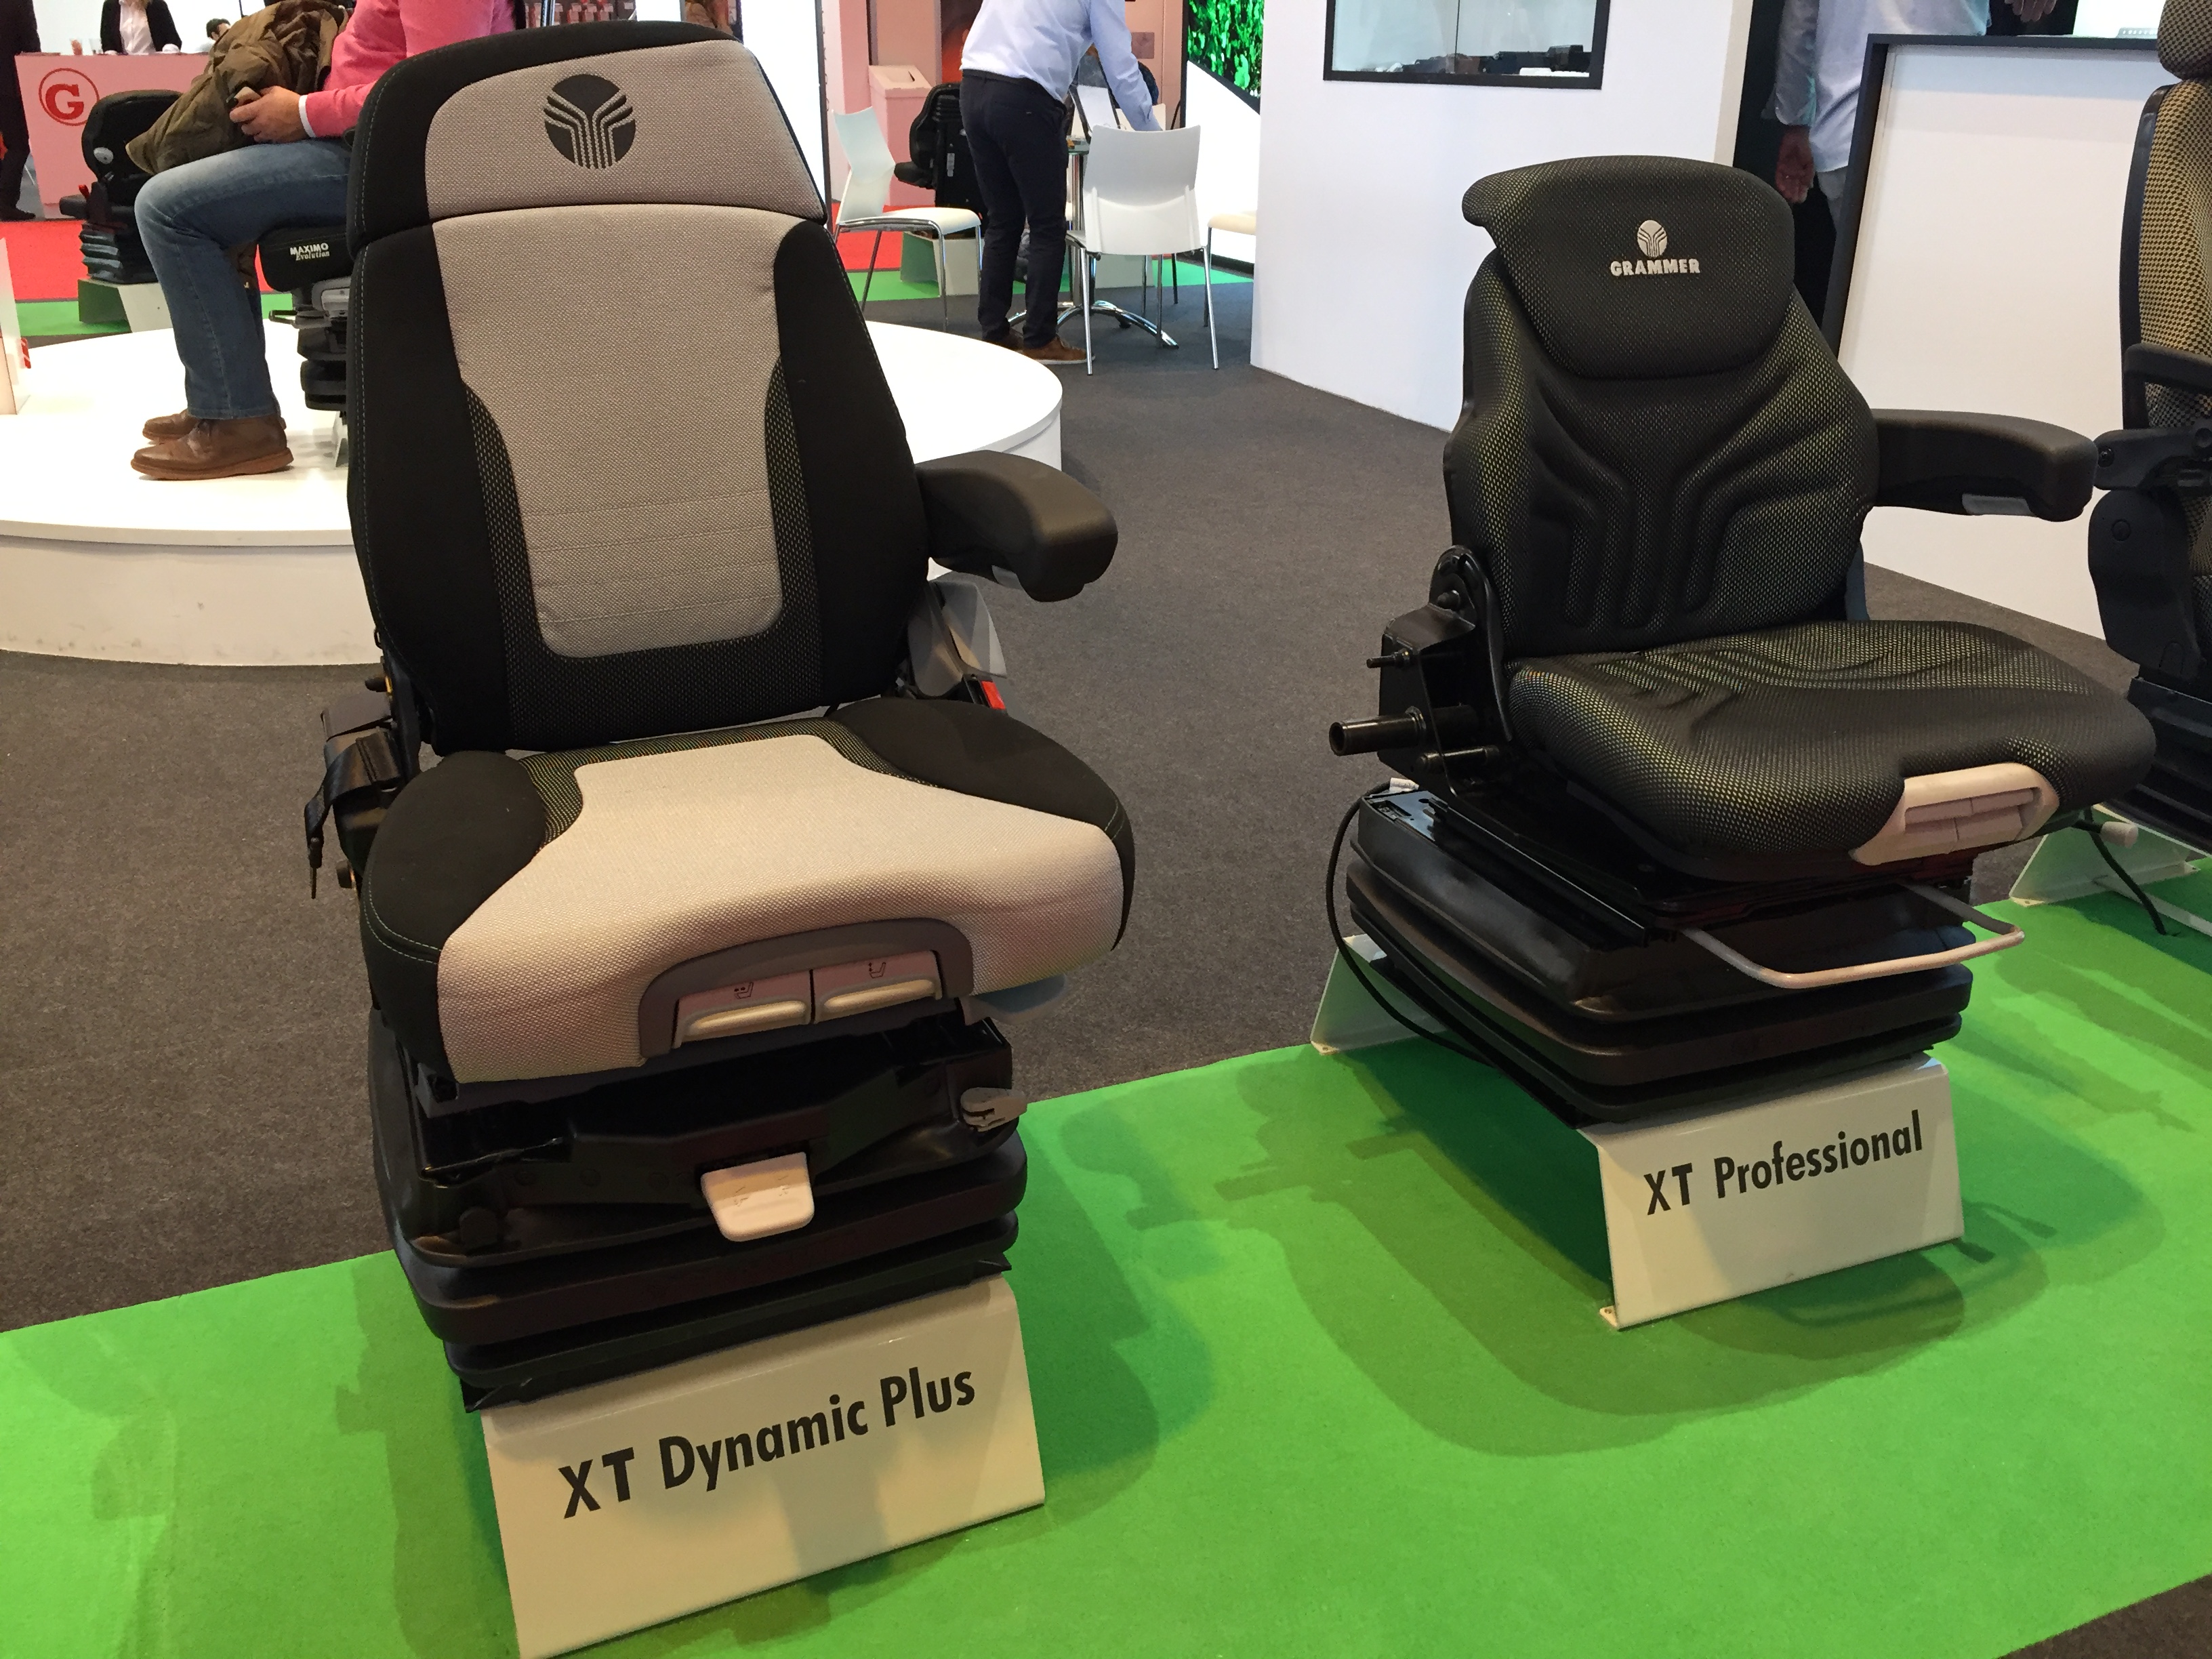 Nuevo asientos Maximo XT expuestos en el stand de Nutriset en FIMA..